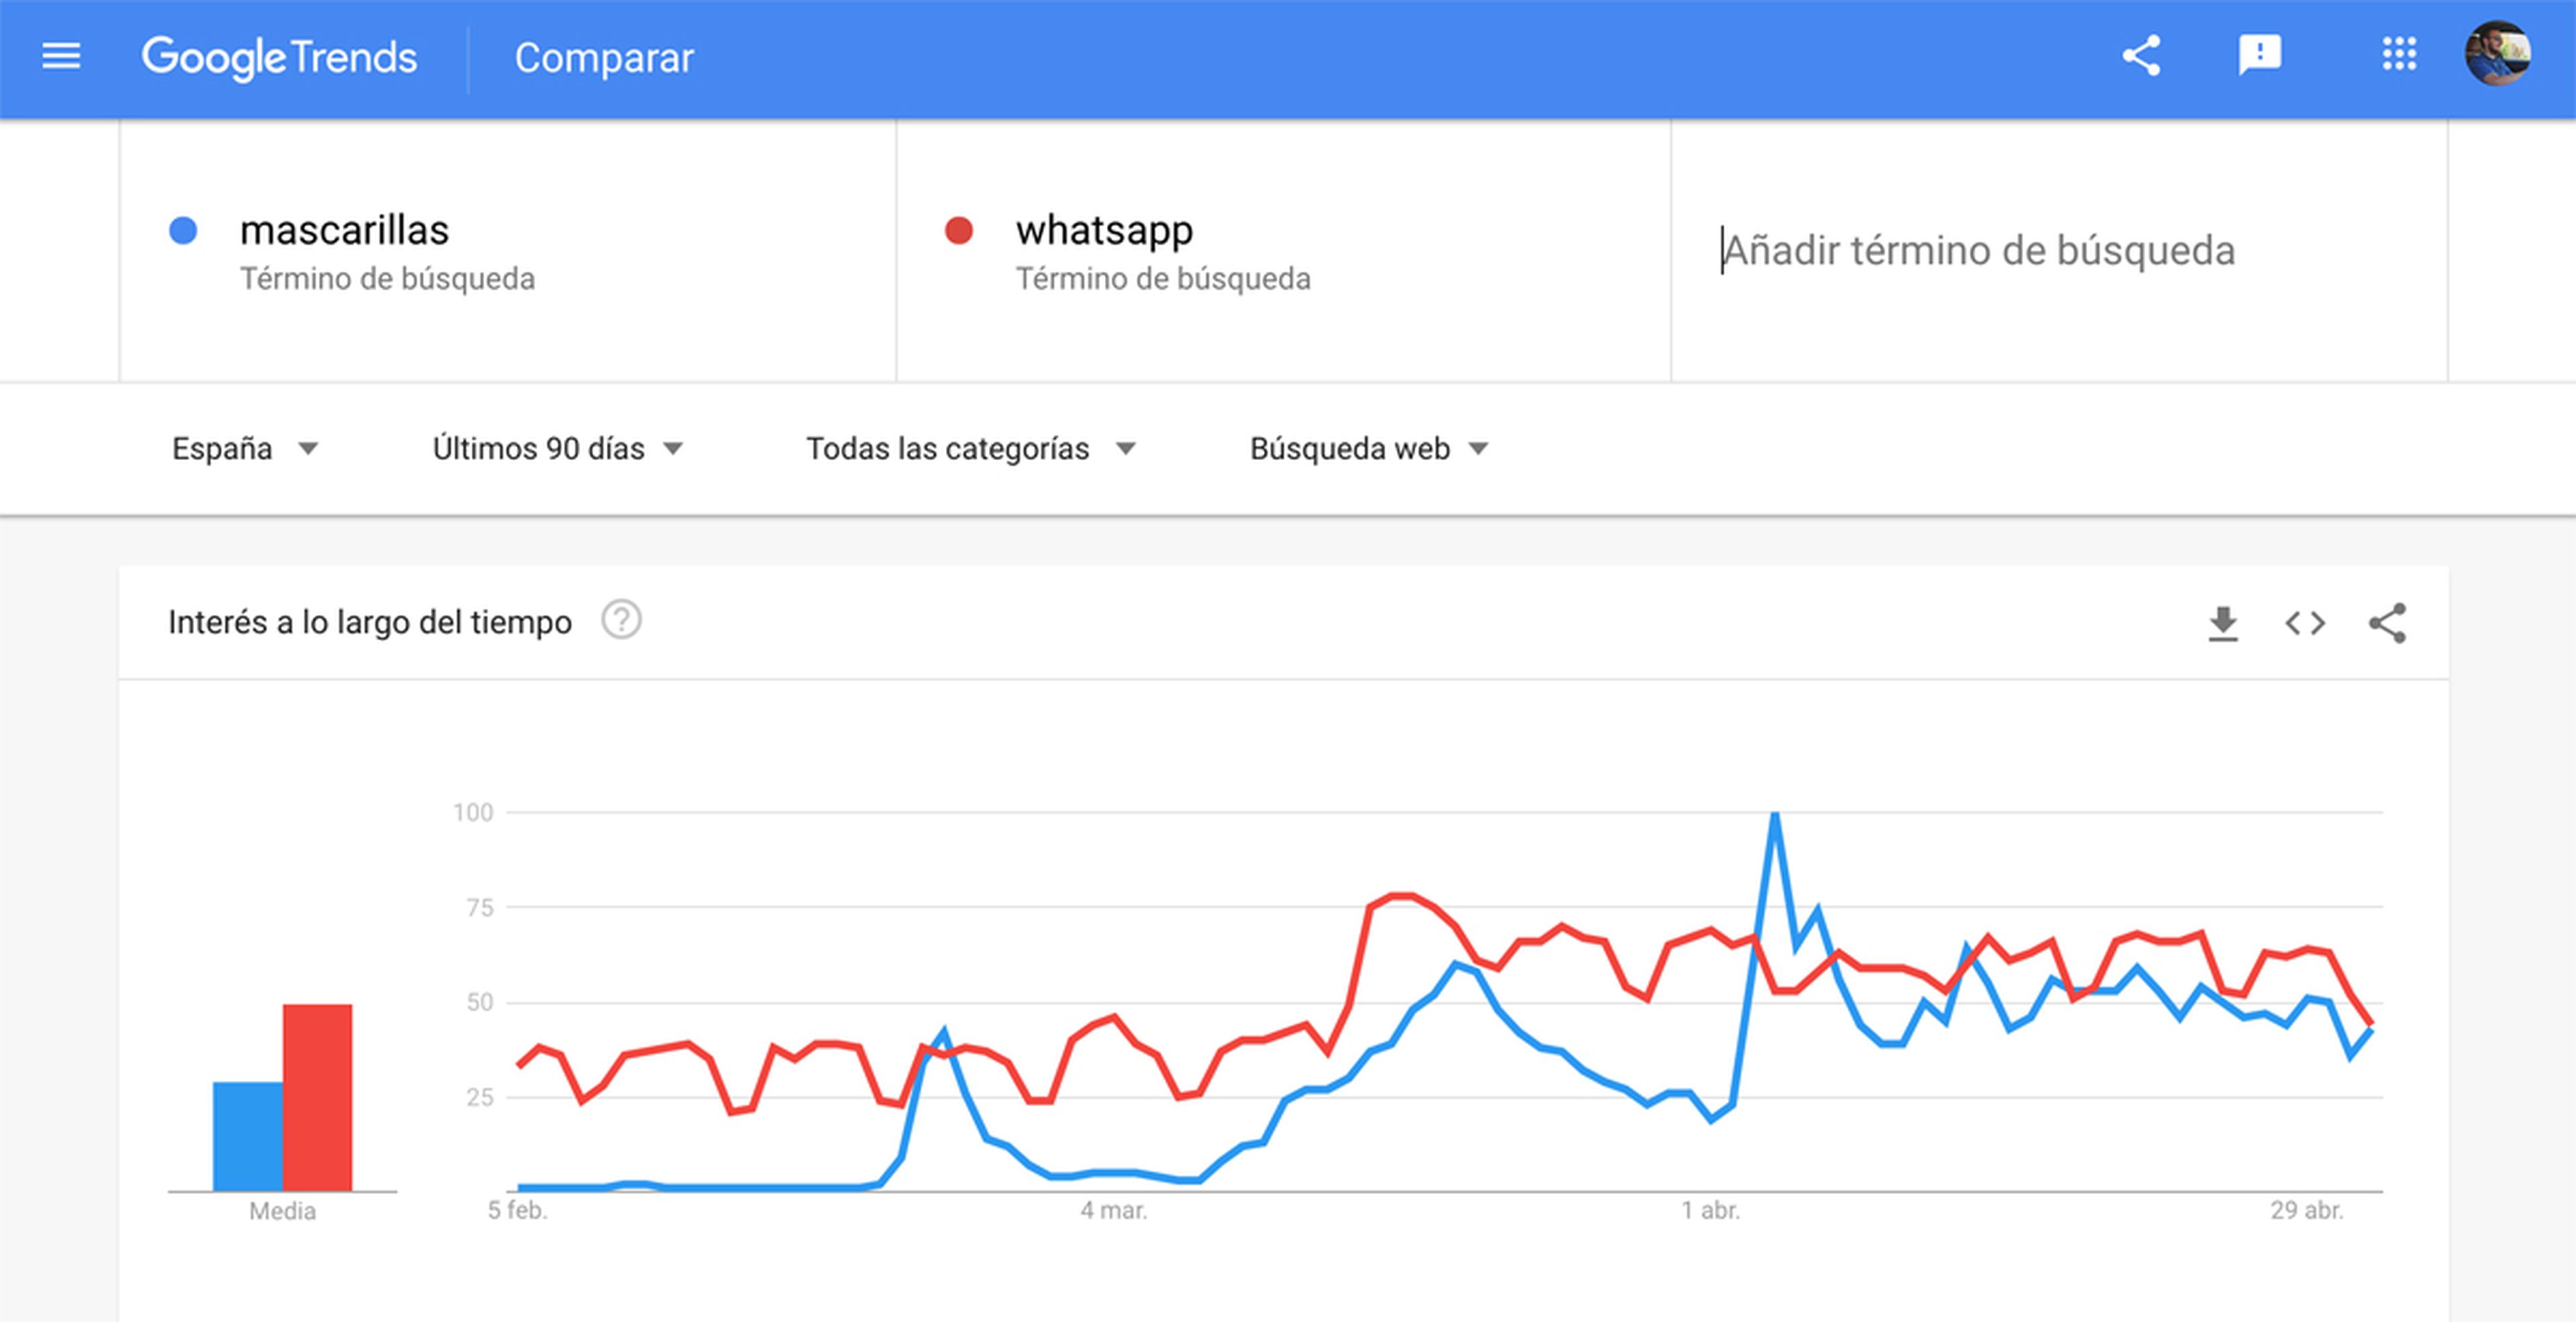 El interés por las mascarillas en España ha llegado incluso a superar las búsquedas que ha registrado WhatsApp en Google durante varios días del mes de abril.